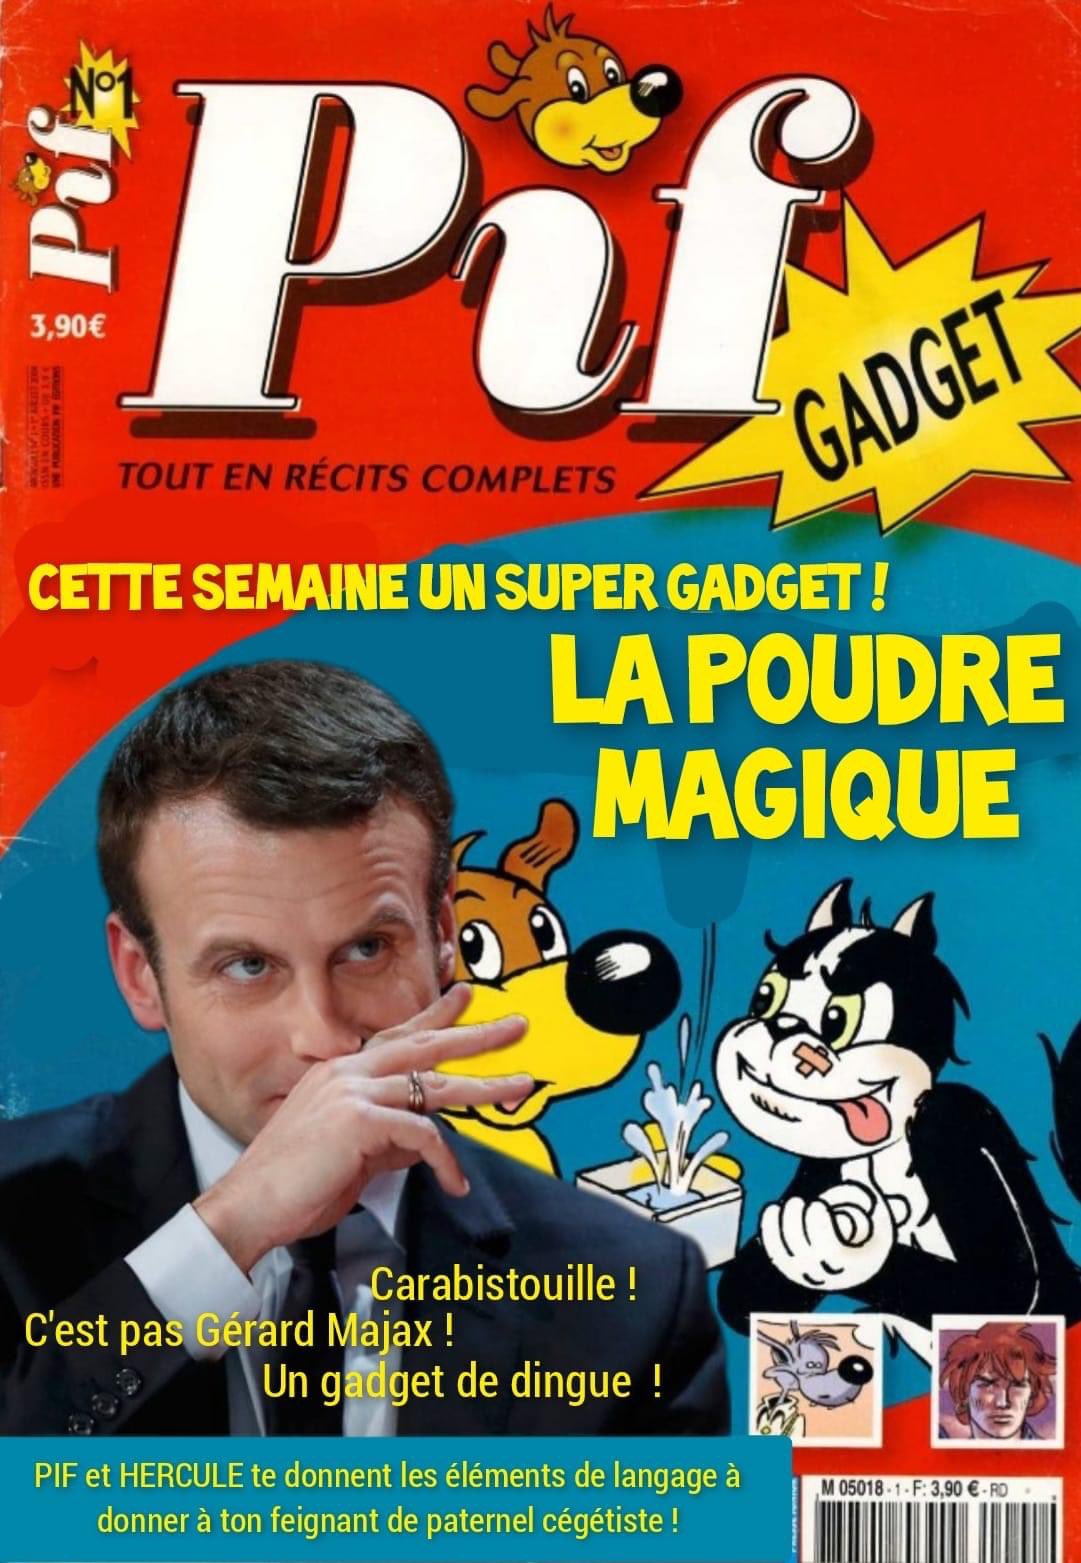 Régis de Castelnau on Twitter: "Pif, Pifou , Tonton, Tata, Hercule ! Et le vainqueur est… #Macron https://t.co/wOqEQRONZg" / Twitter